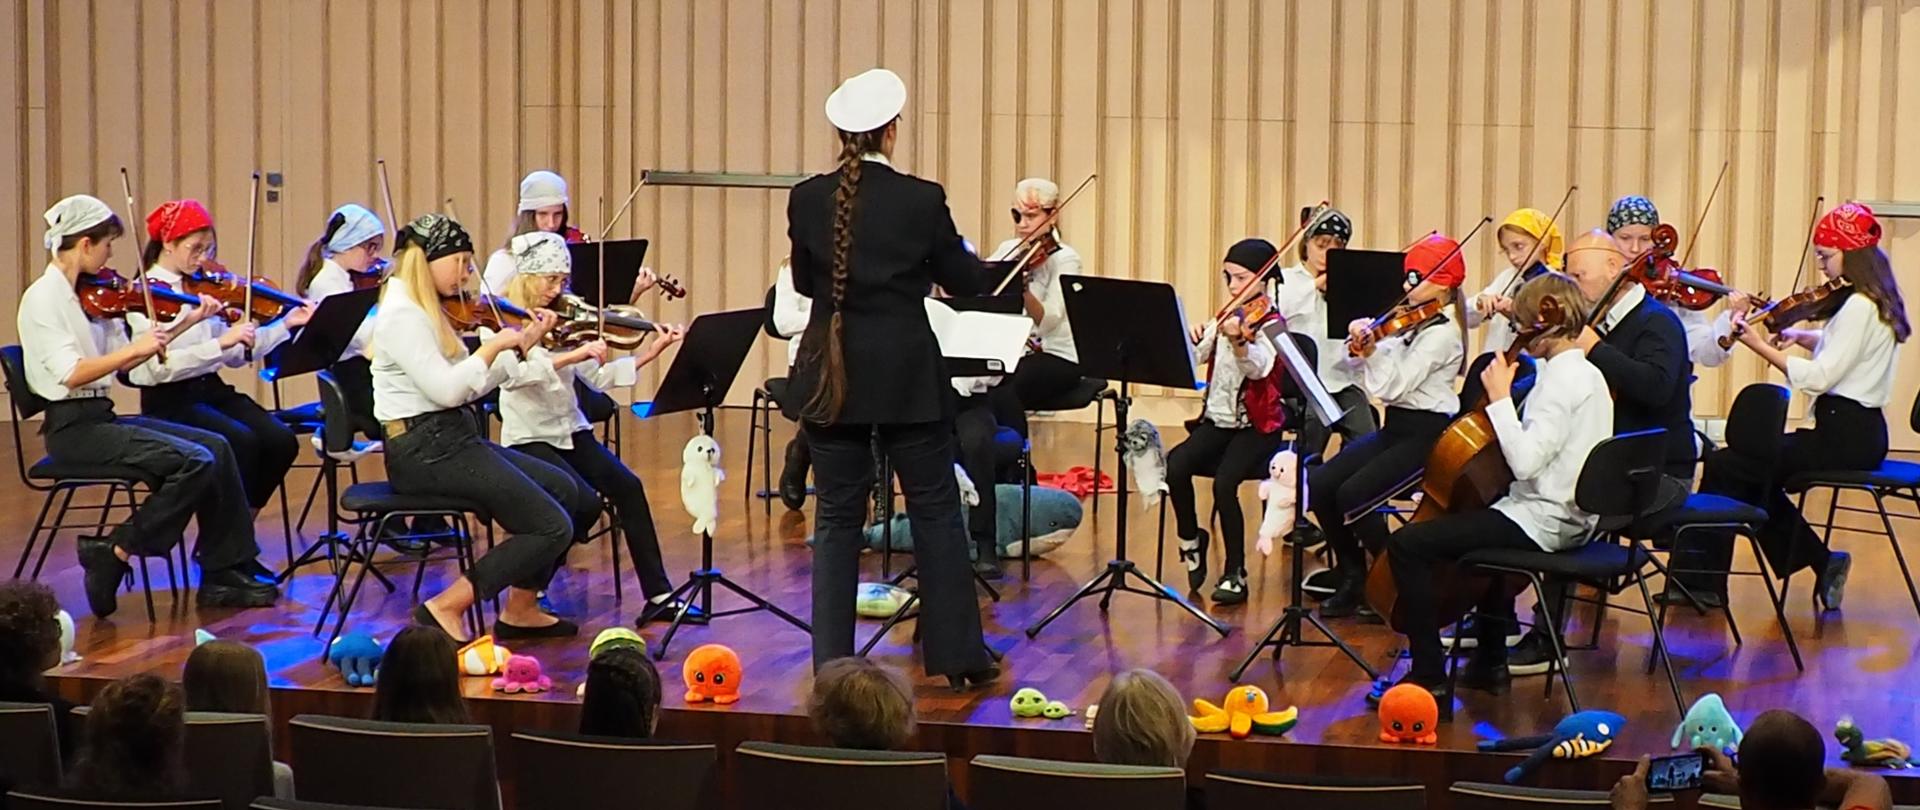 Młodzieżowa orkiestra smyczkowa z dyrygentem na scenie w sali koncertowej.